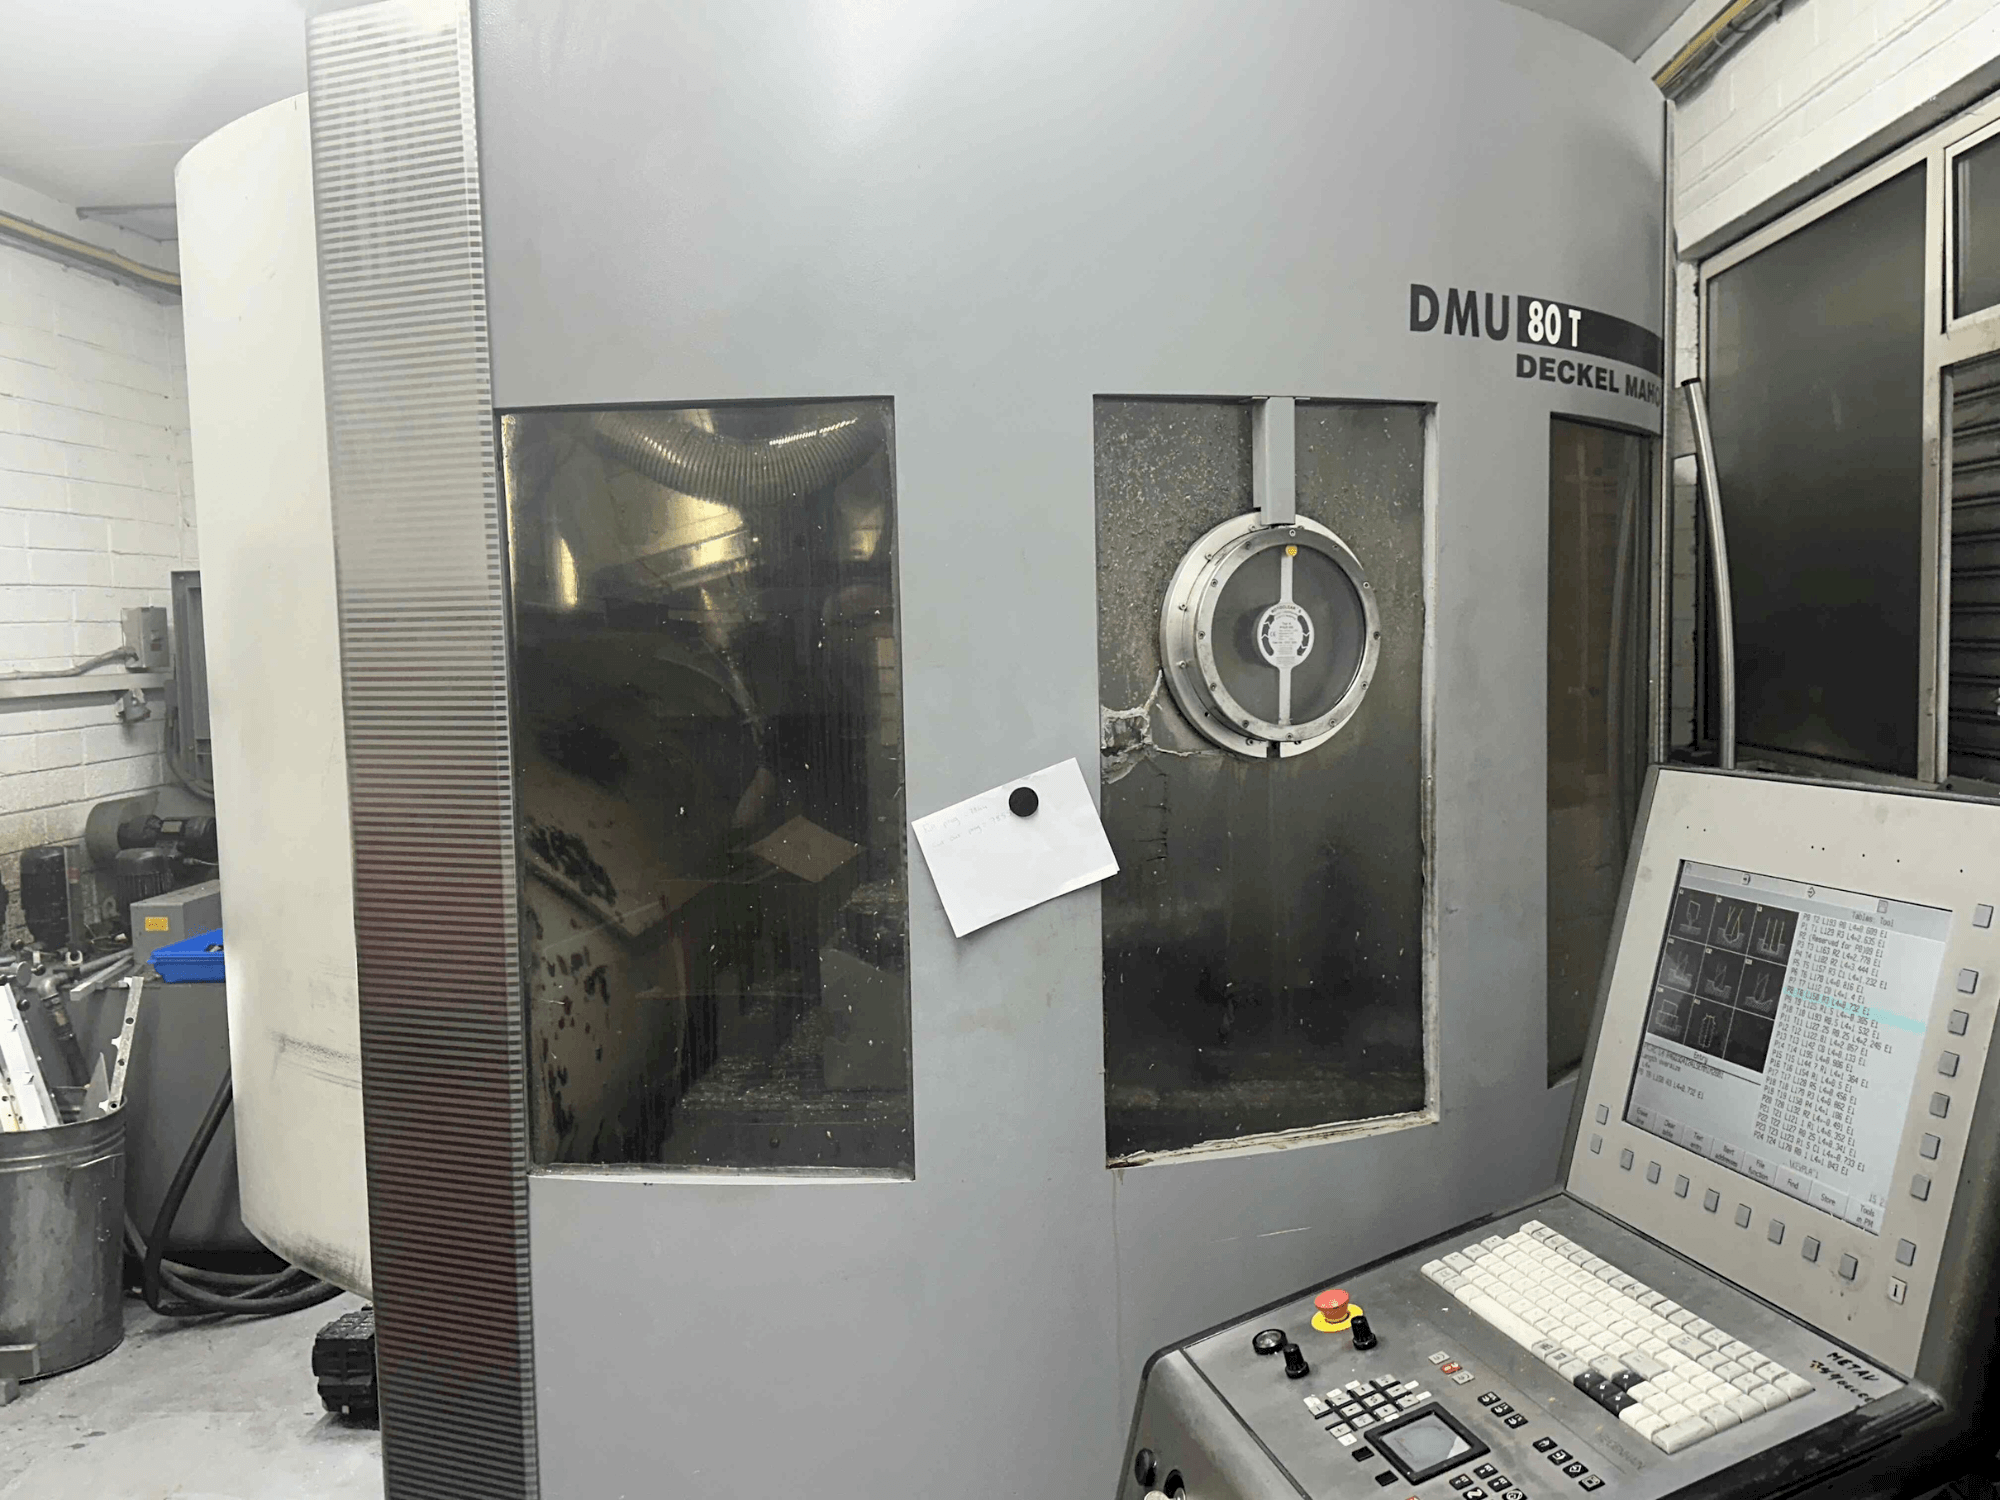 Vue de face de la machine DECKEL MAHO DMU 80T (2002)